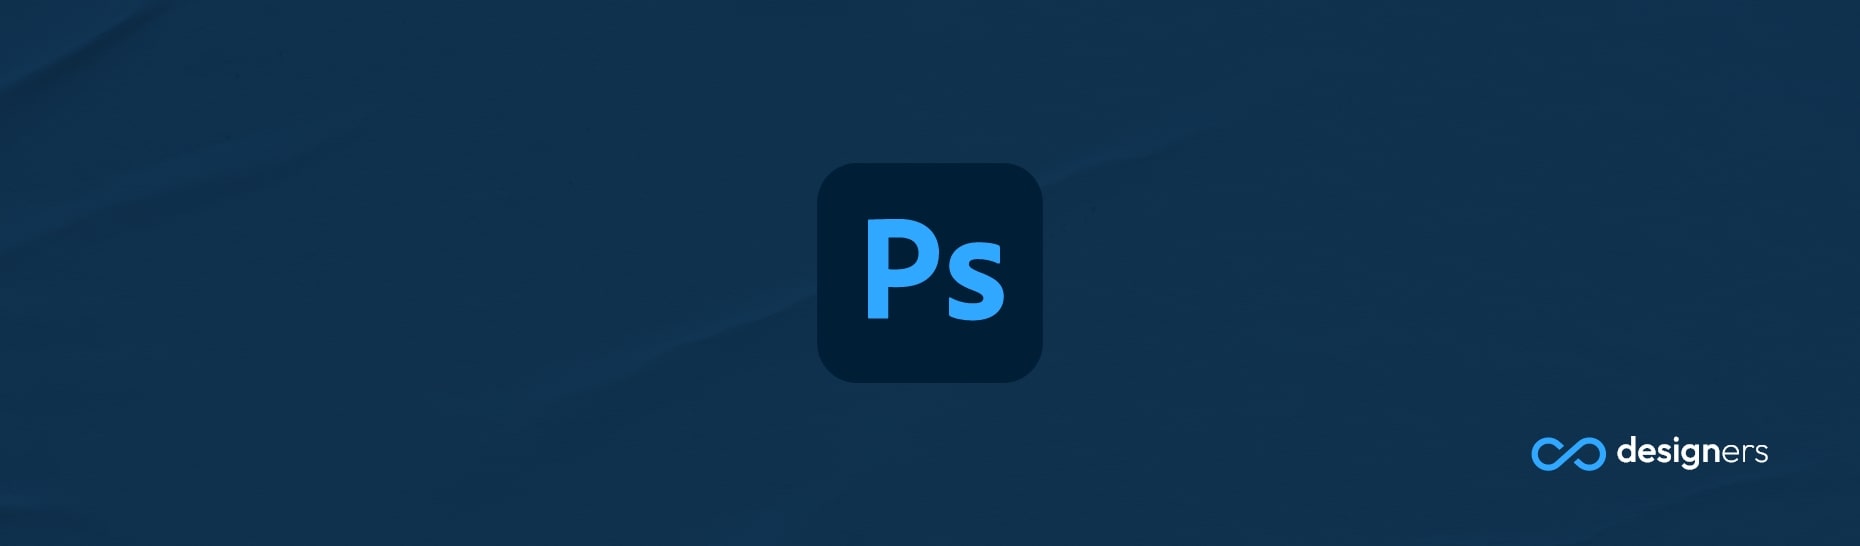 Is PaintShop Pro as Good as Photoshop?